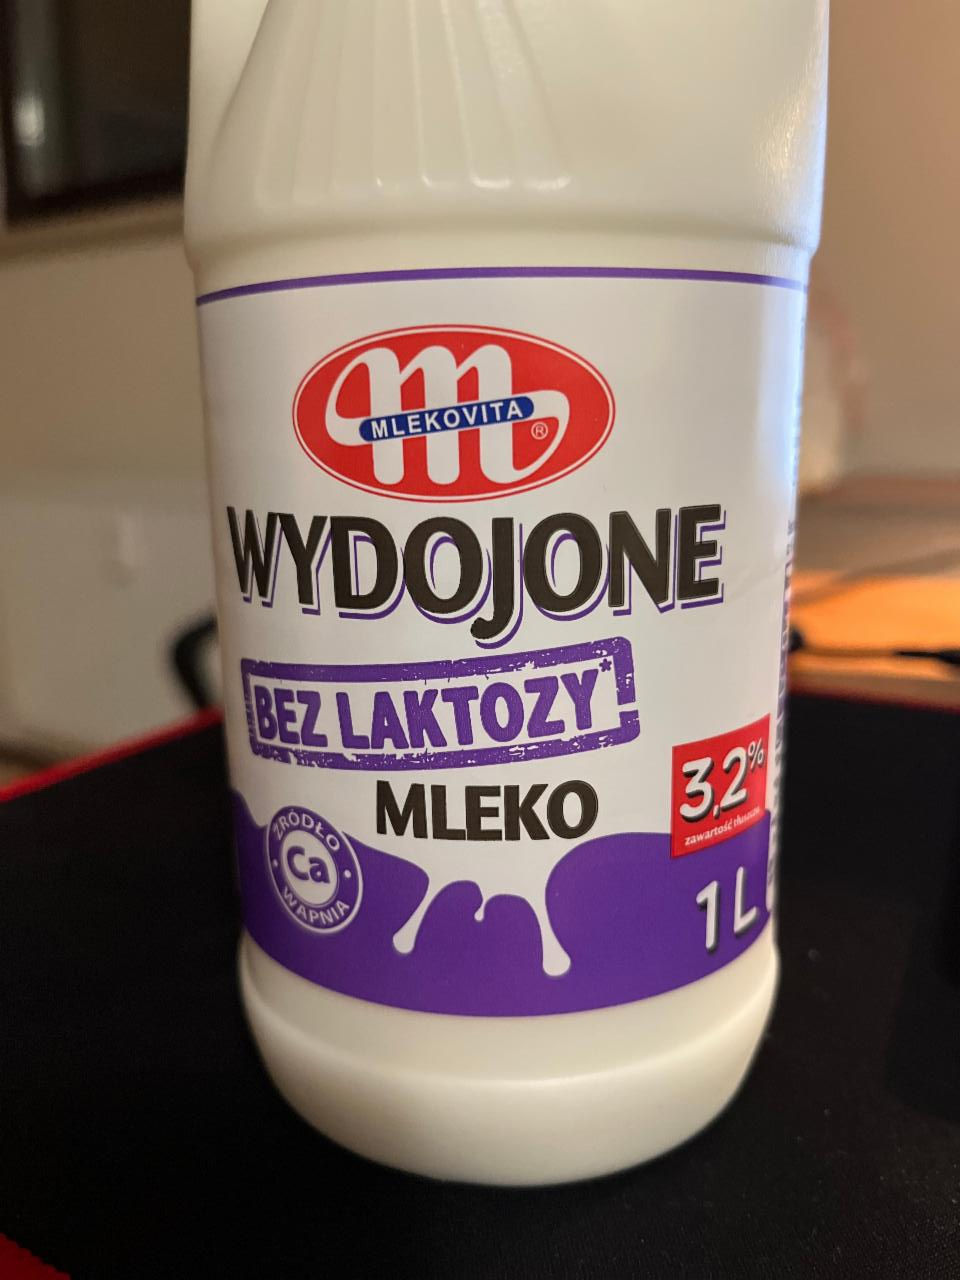 Zdjęcia - Mlekovita Wydojone Mleko bez laktozy 3,2 % 1 l